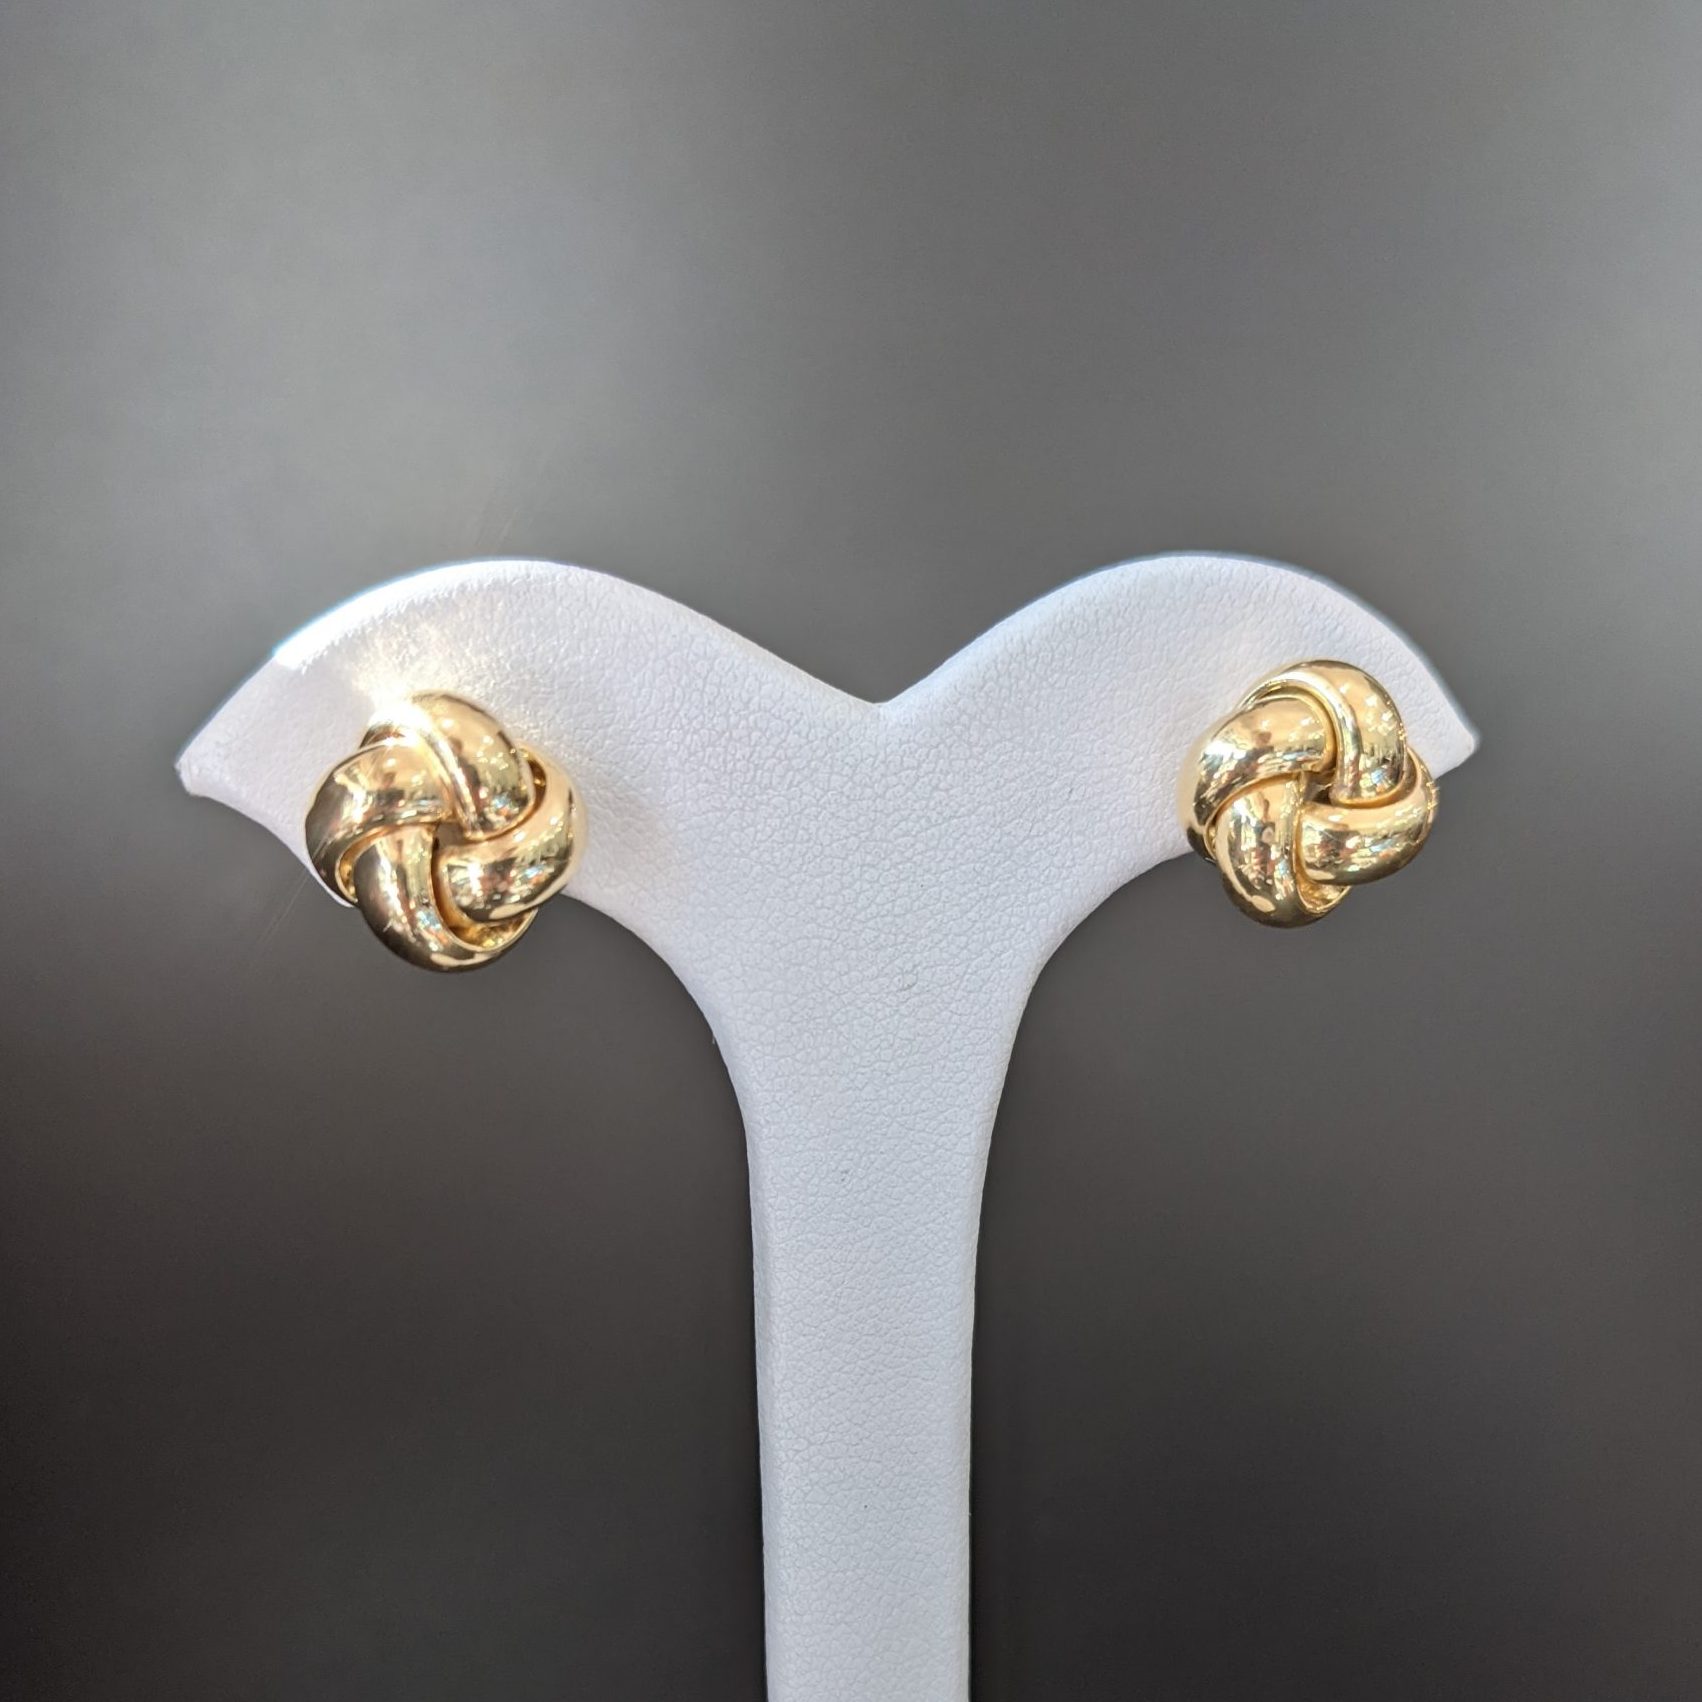 Gold knot stud earrings